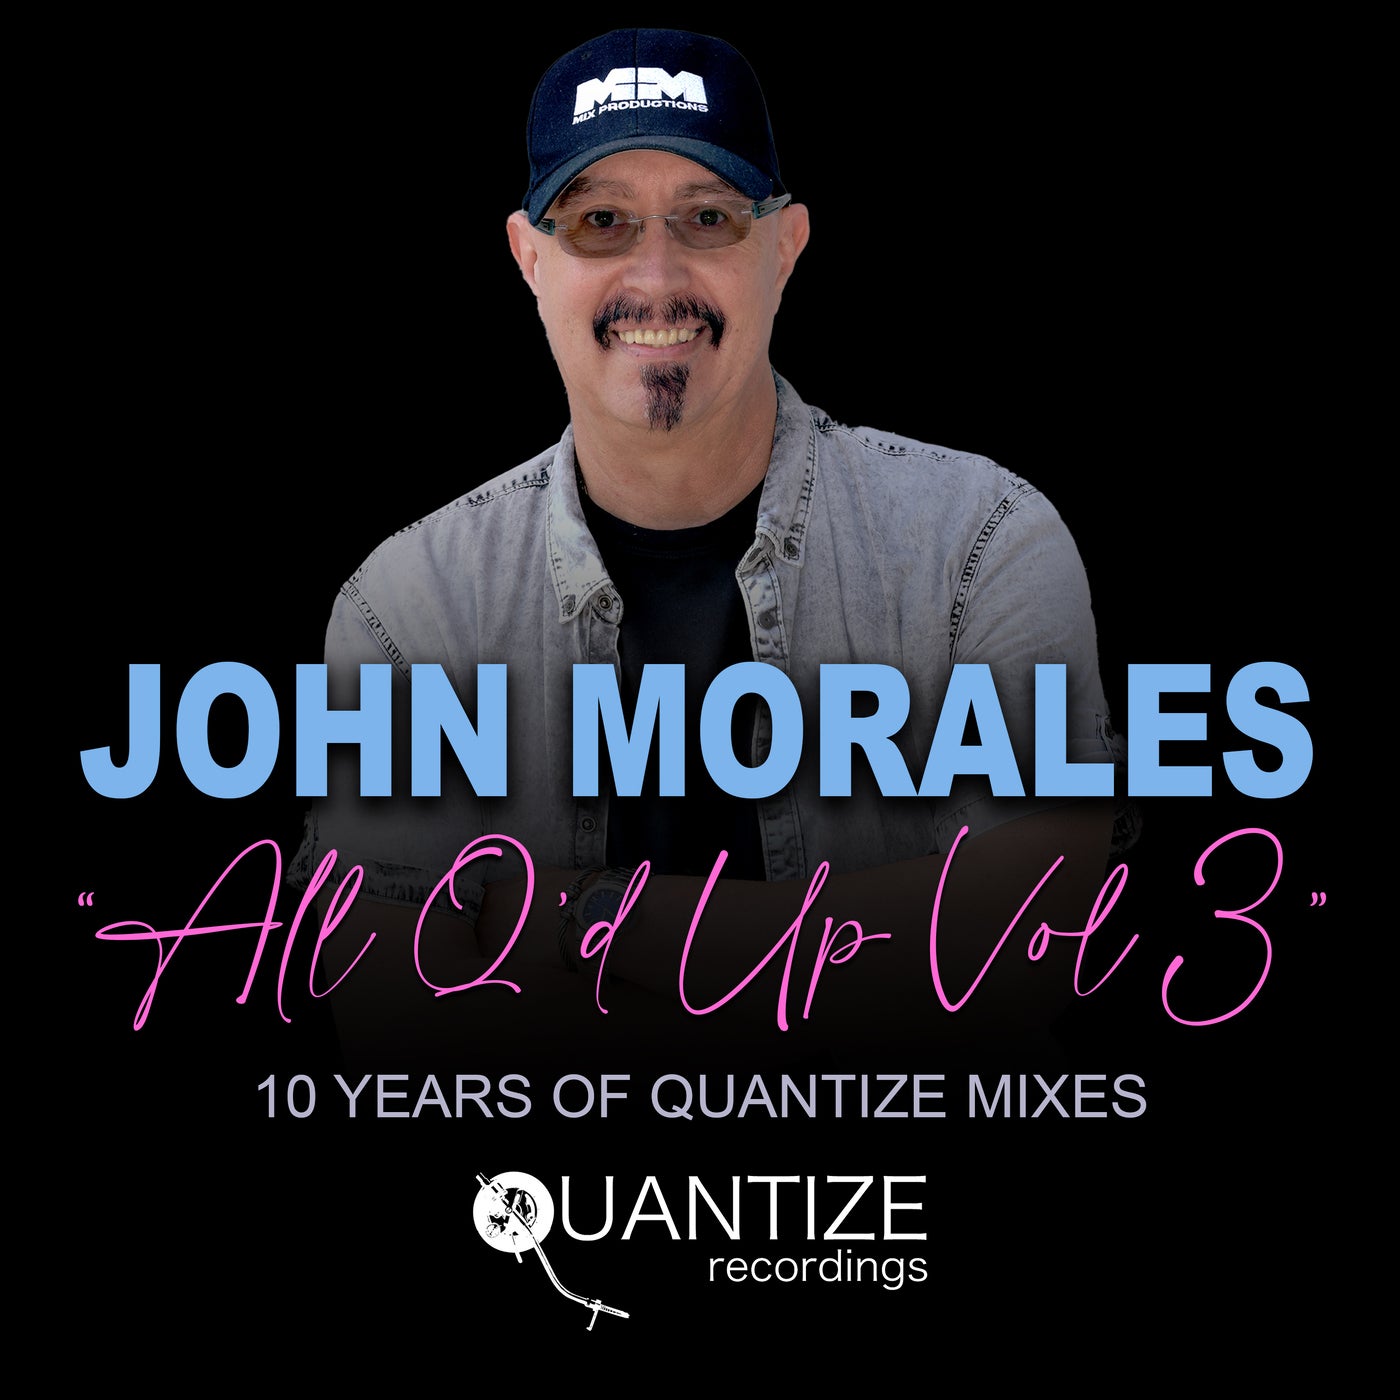 John Morales All Q'd Up Vol. 3